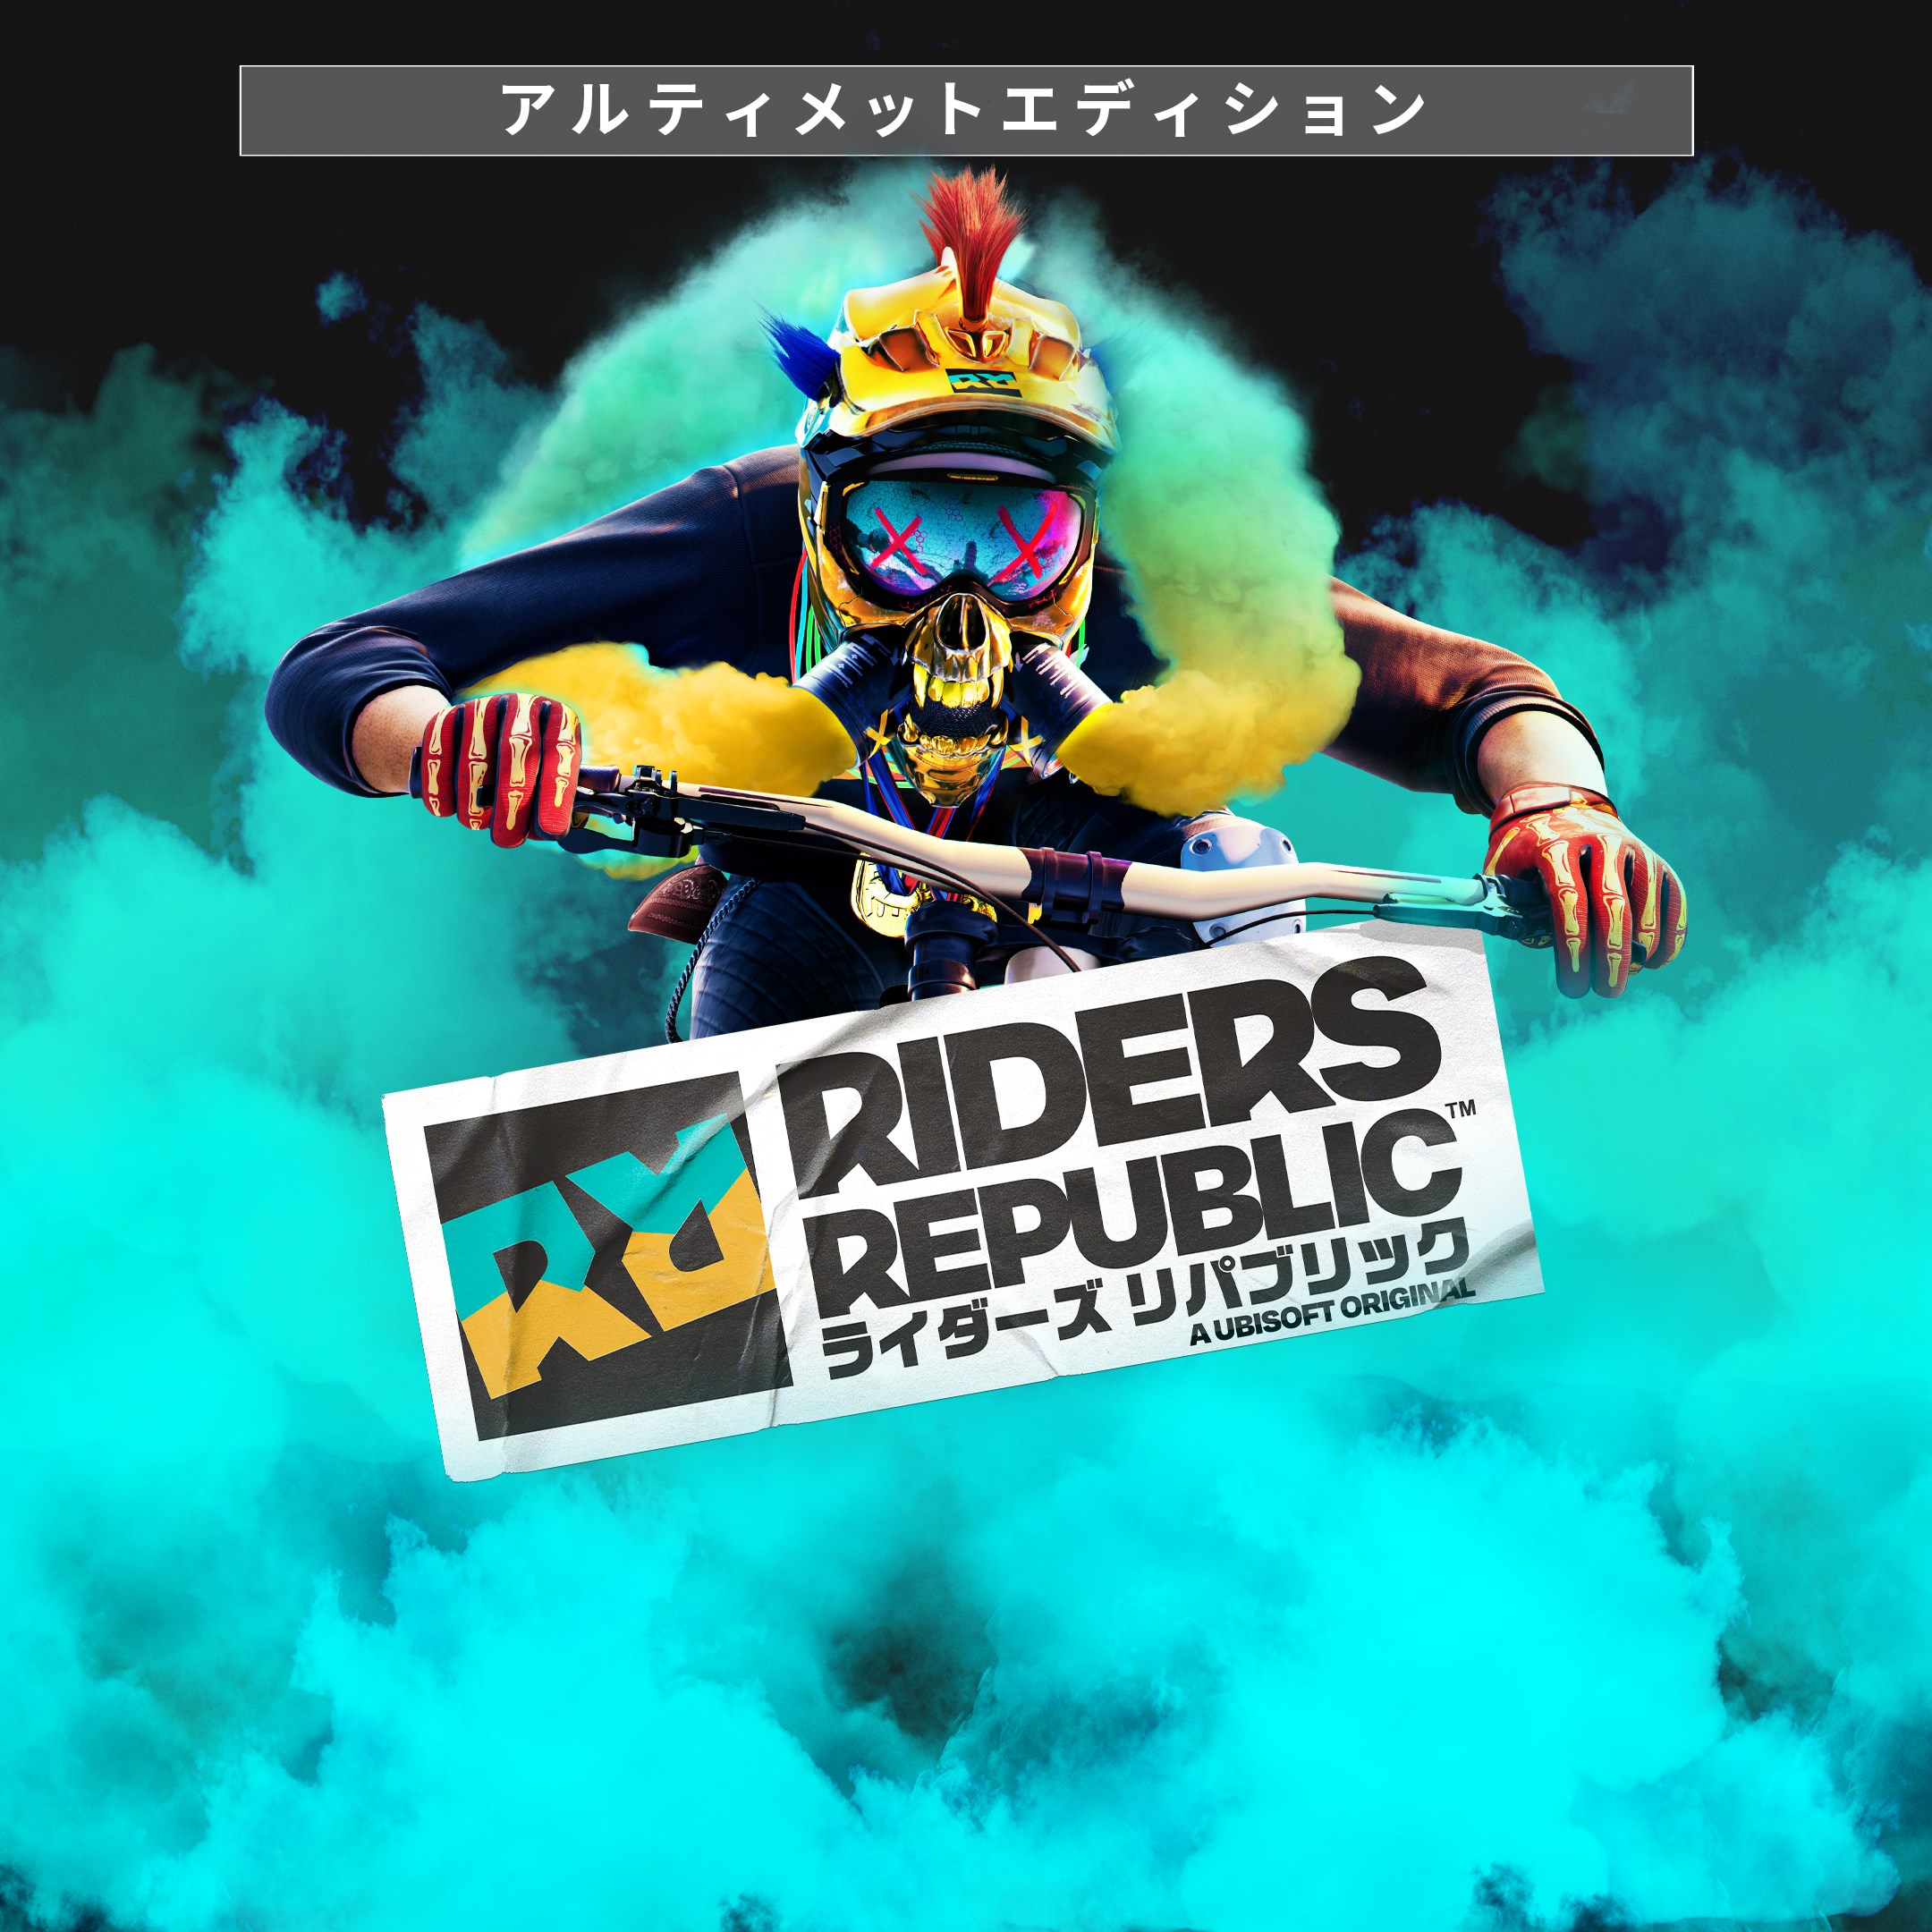 Riders Republic™ Ultimate Edition